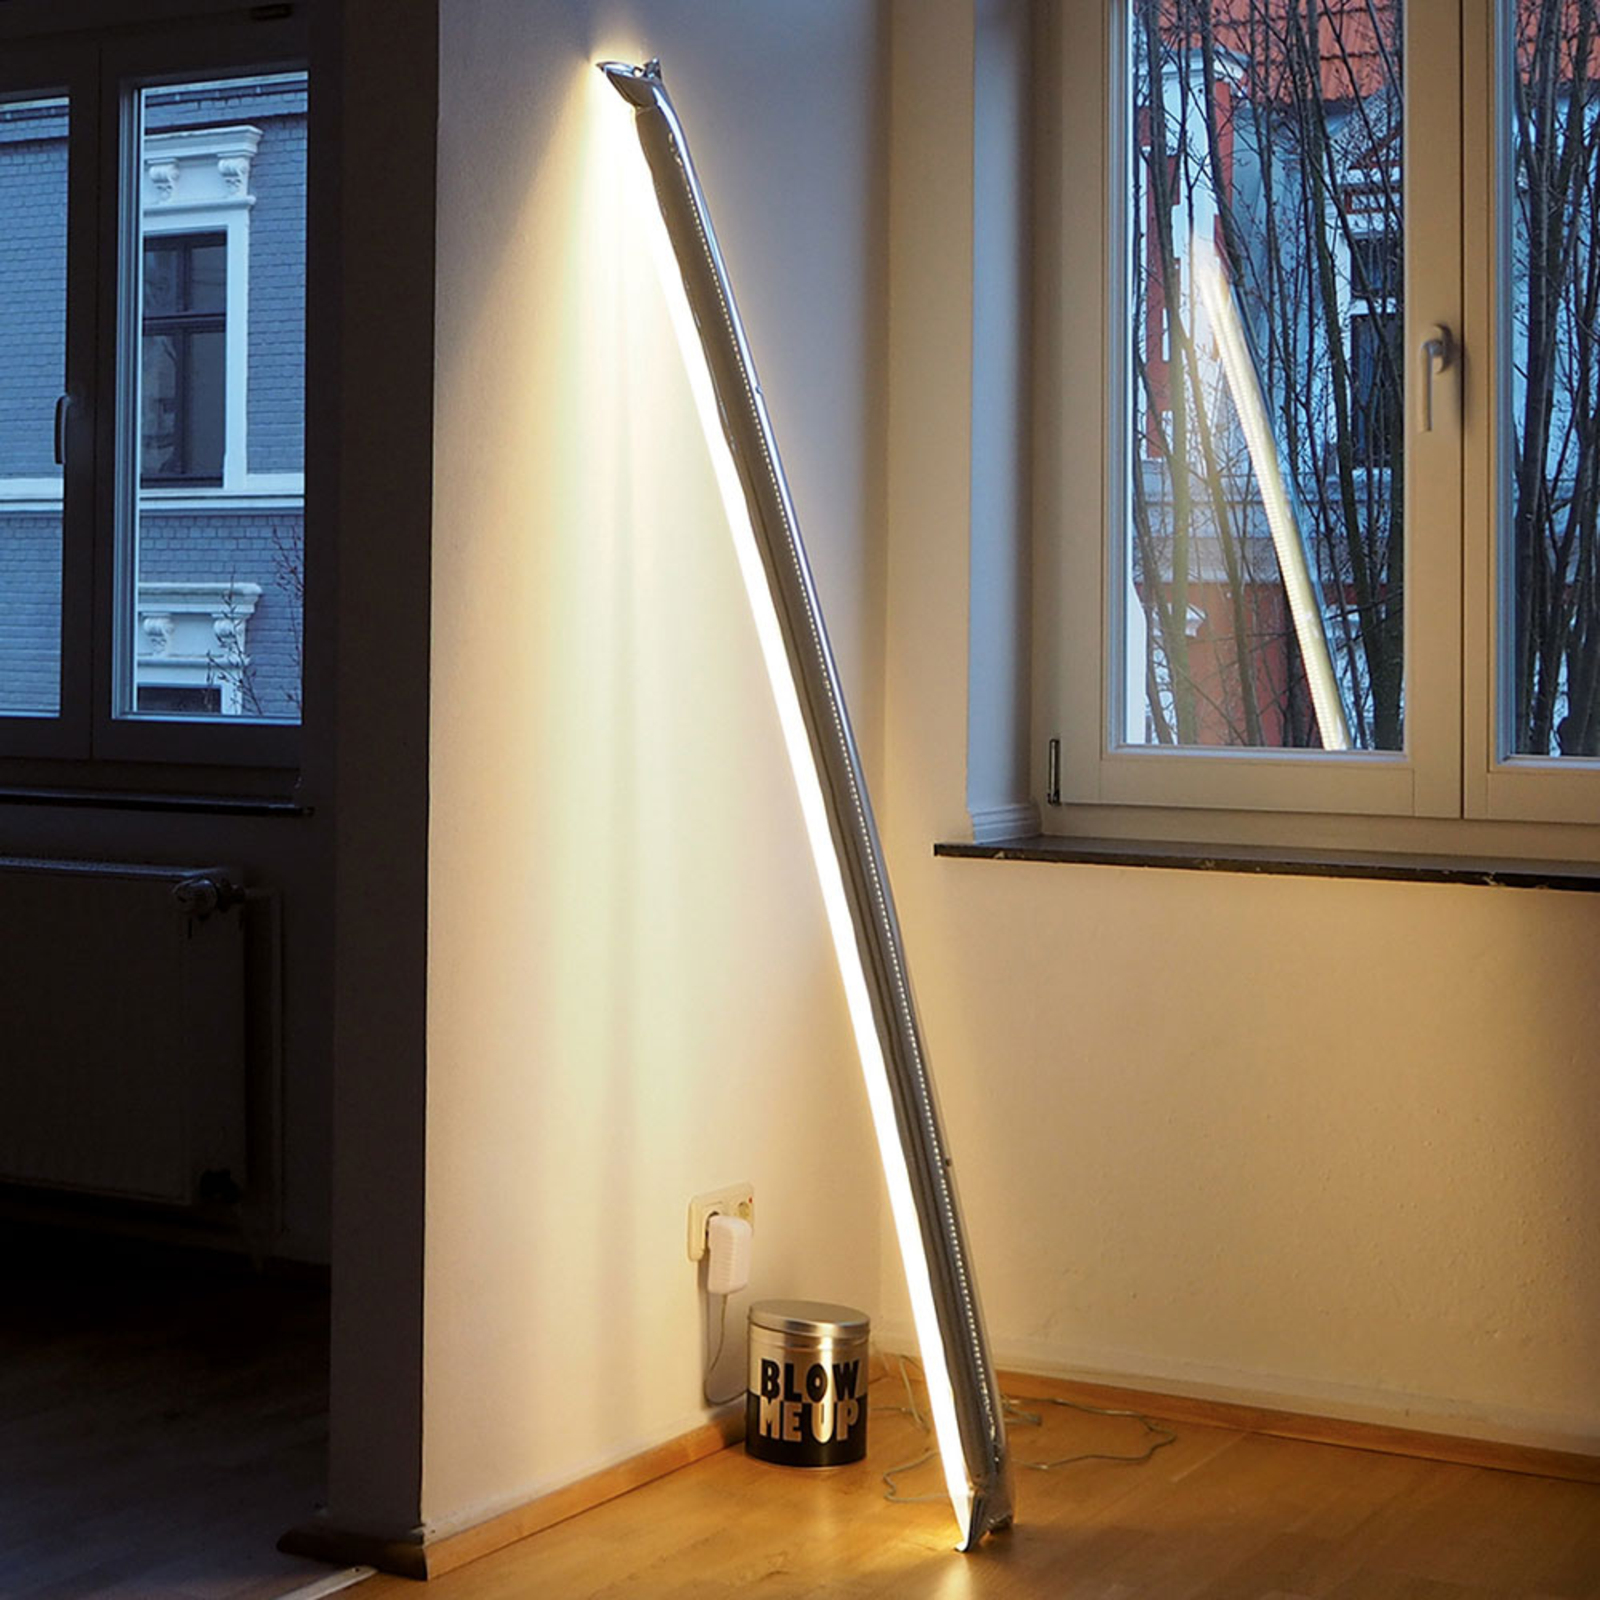 Ingo Maurer Blow Me Up LED vloerlamp 120cm zilver